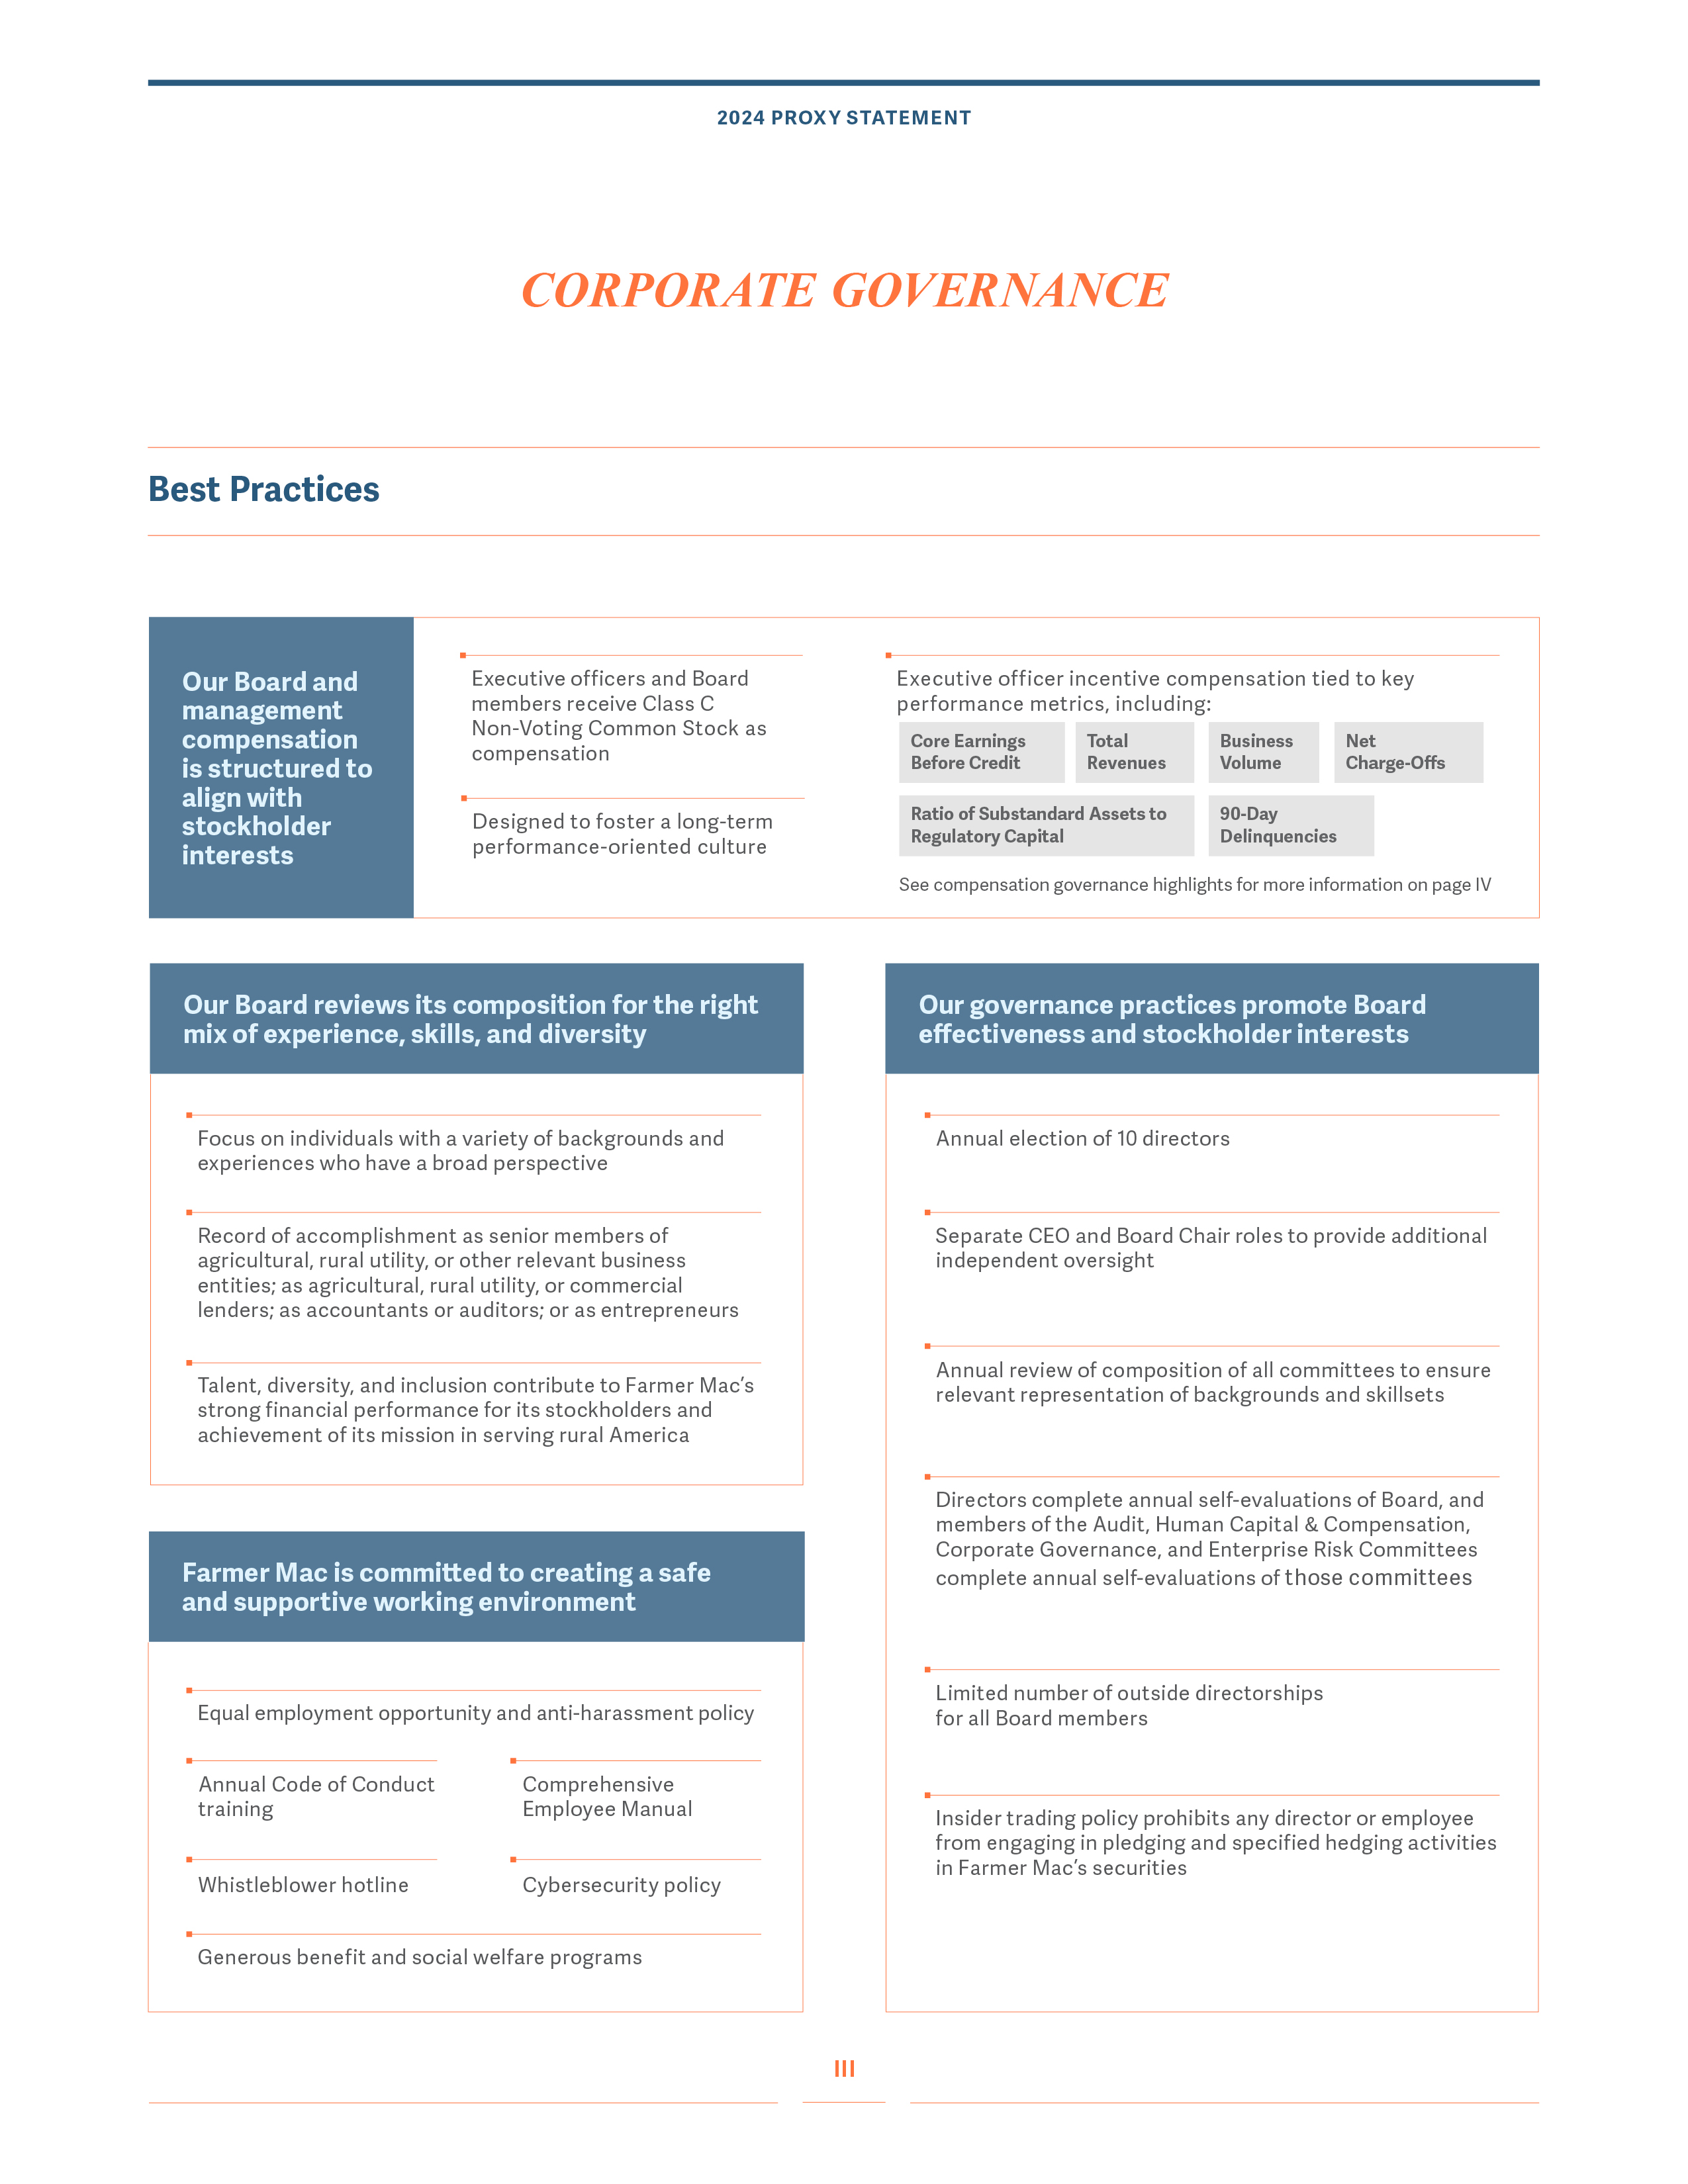 3-Corpotate-Governance.jpg